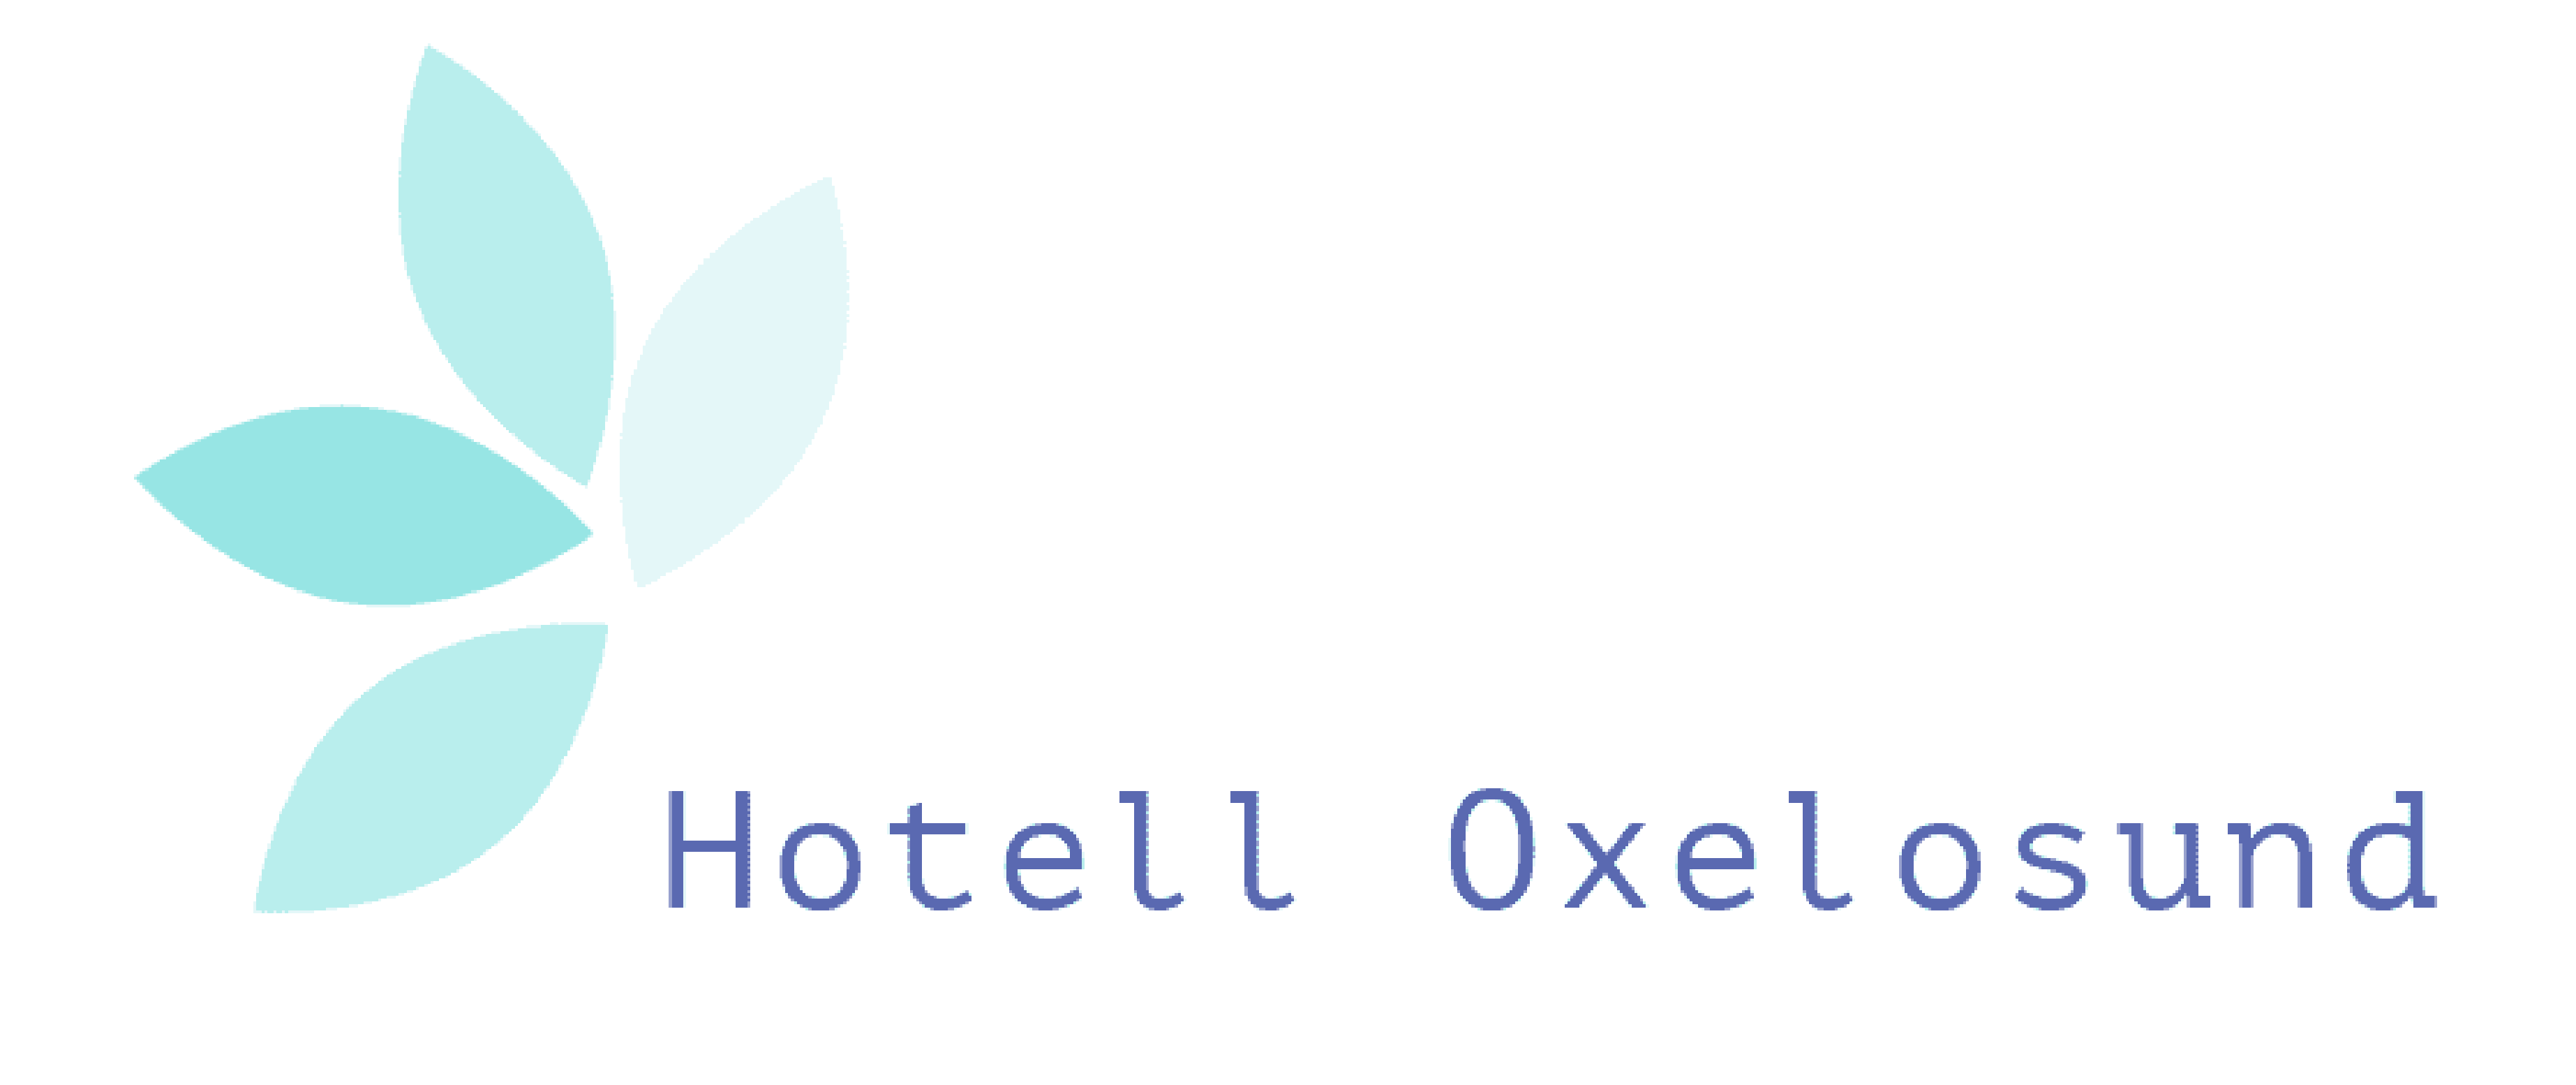 Hotel Oxelosund